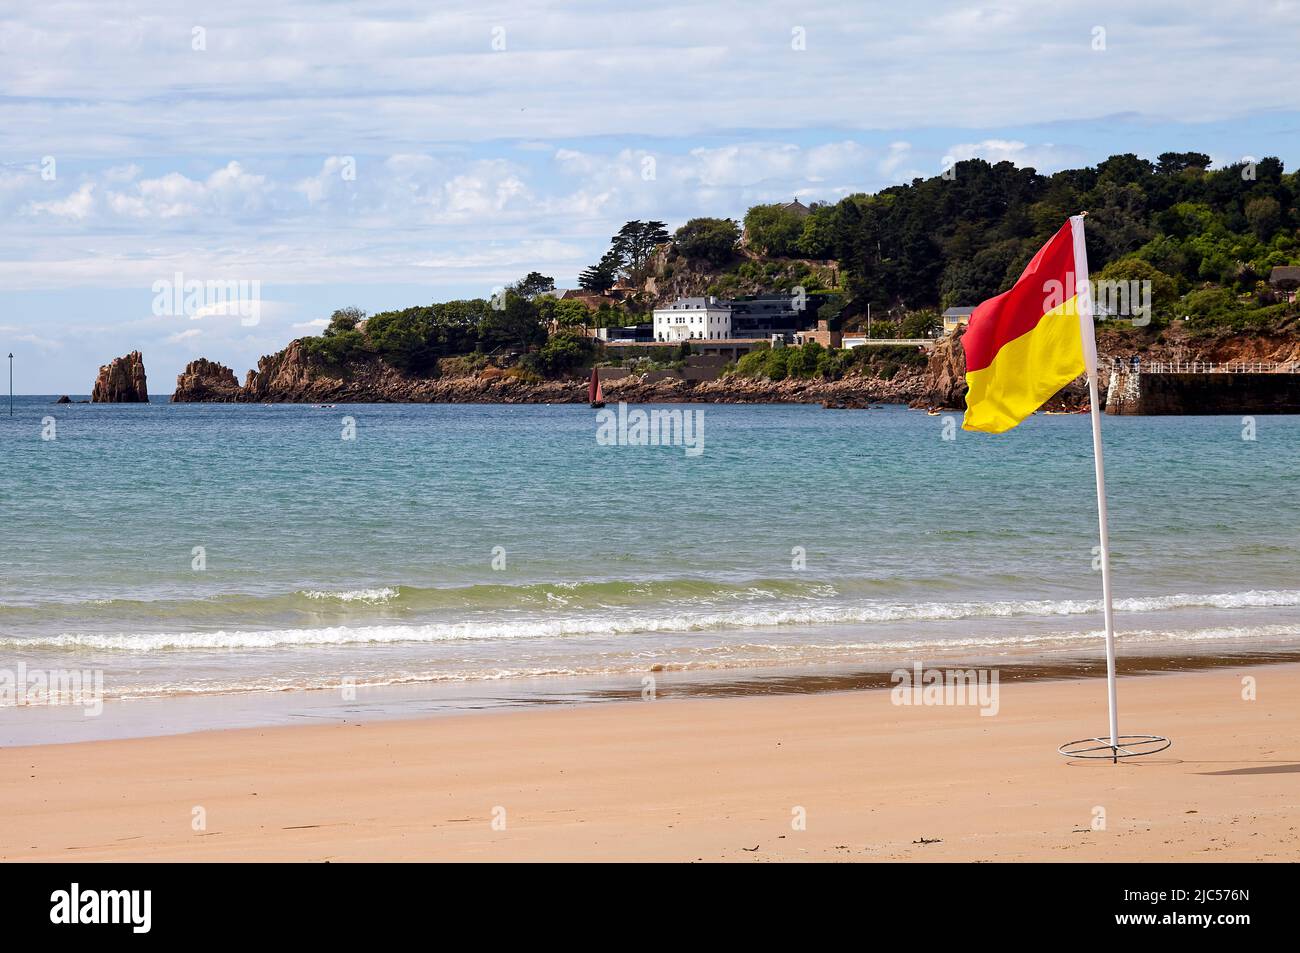 Beach warning red flags wind -Fotos und -Bildmaterial in hoher Auflösung –  Alamy